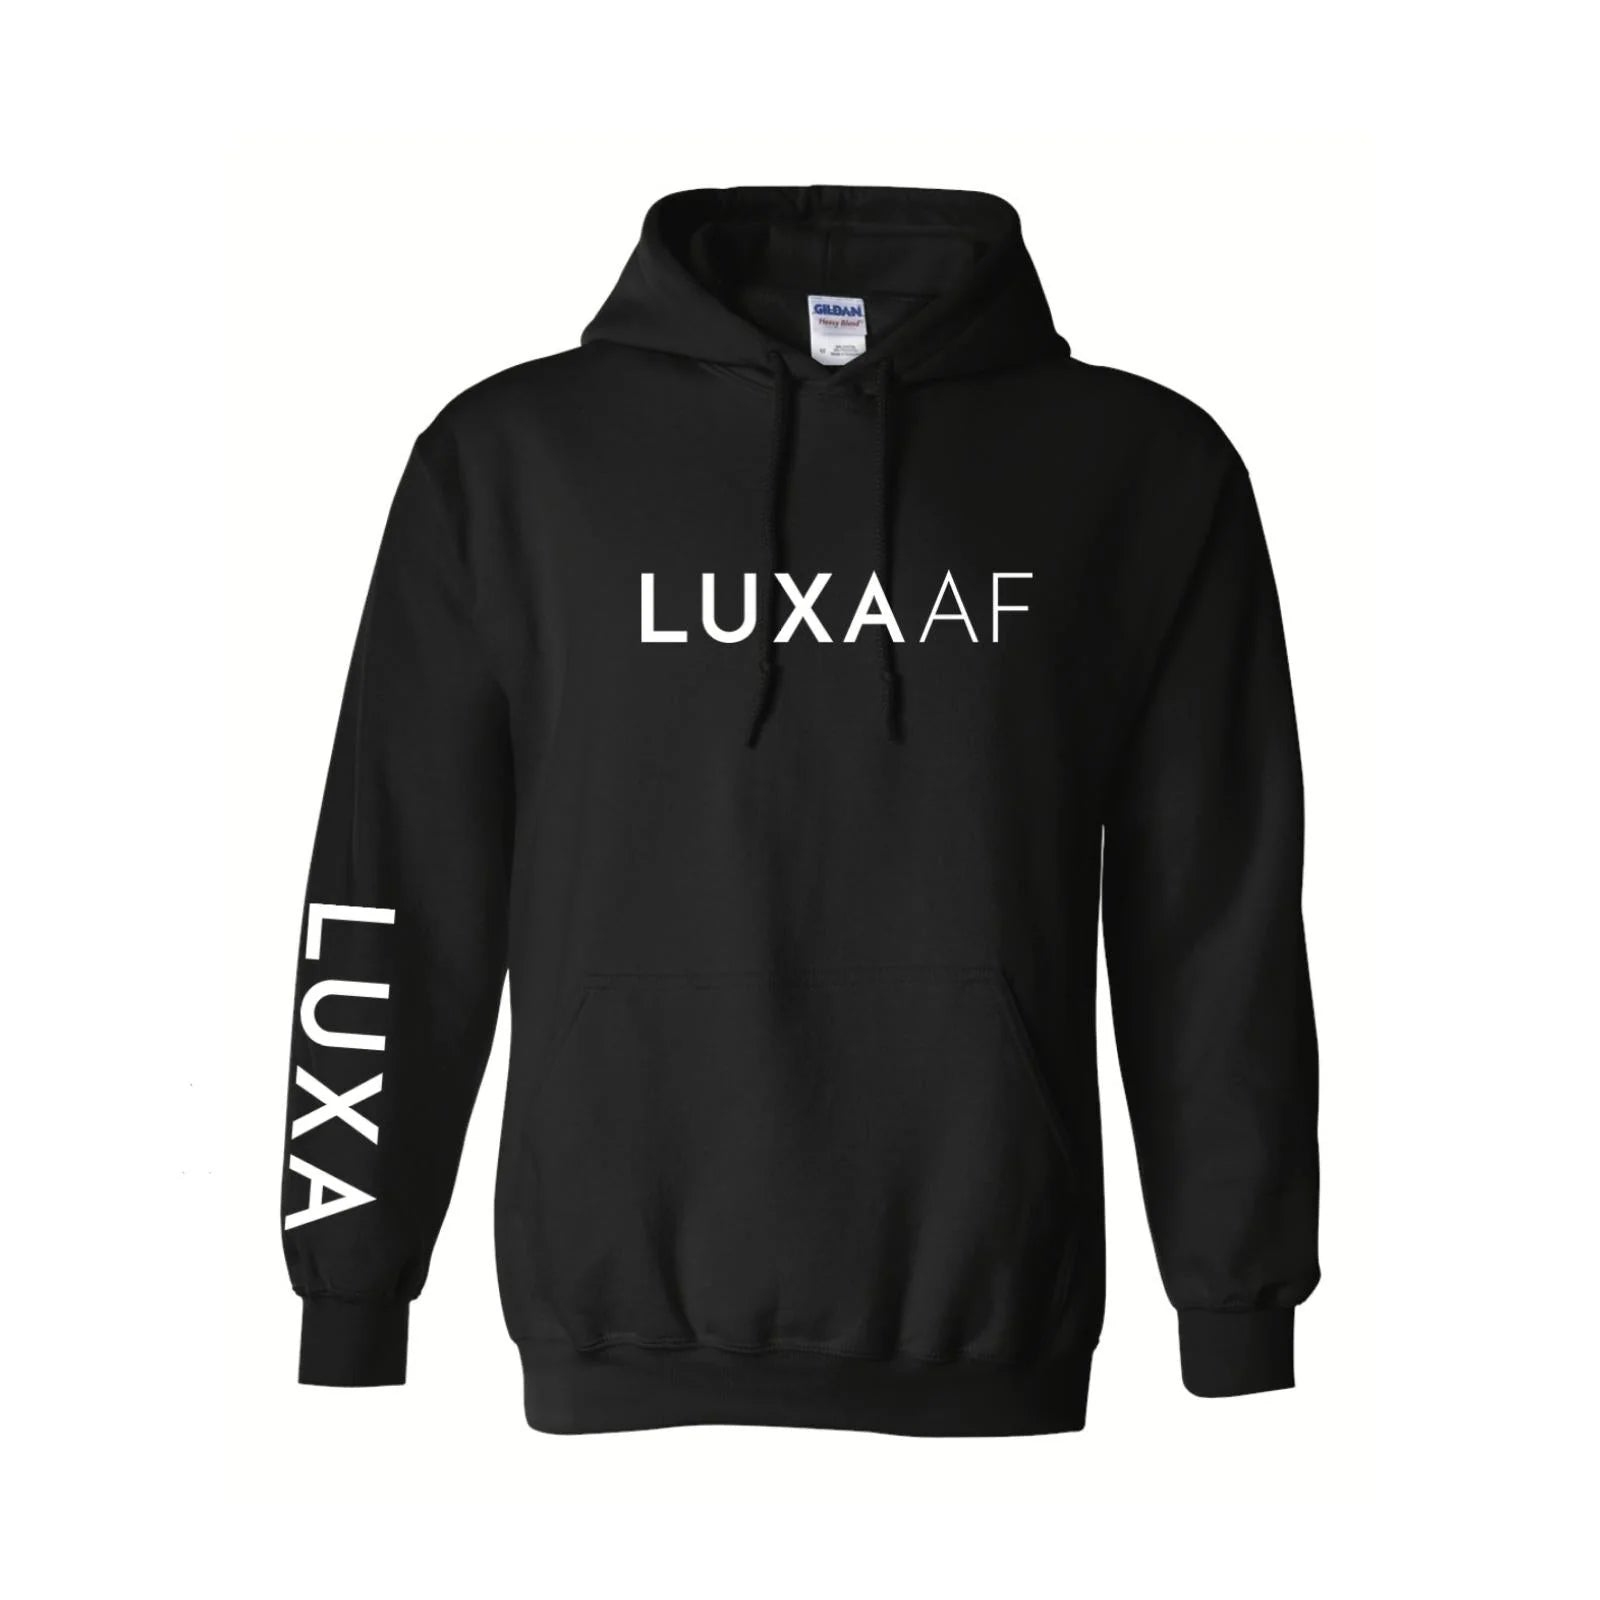 LUXA AF - Black Pullover Hoodie